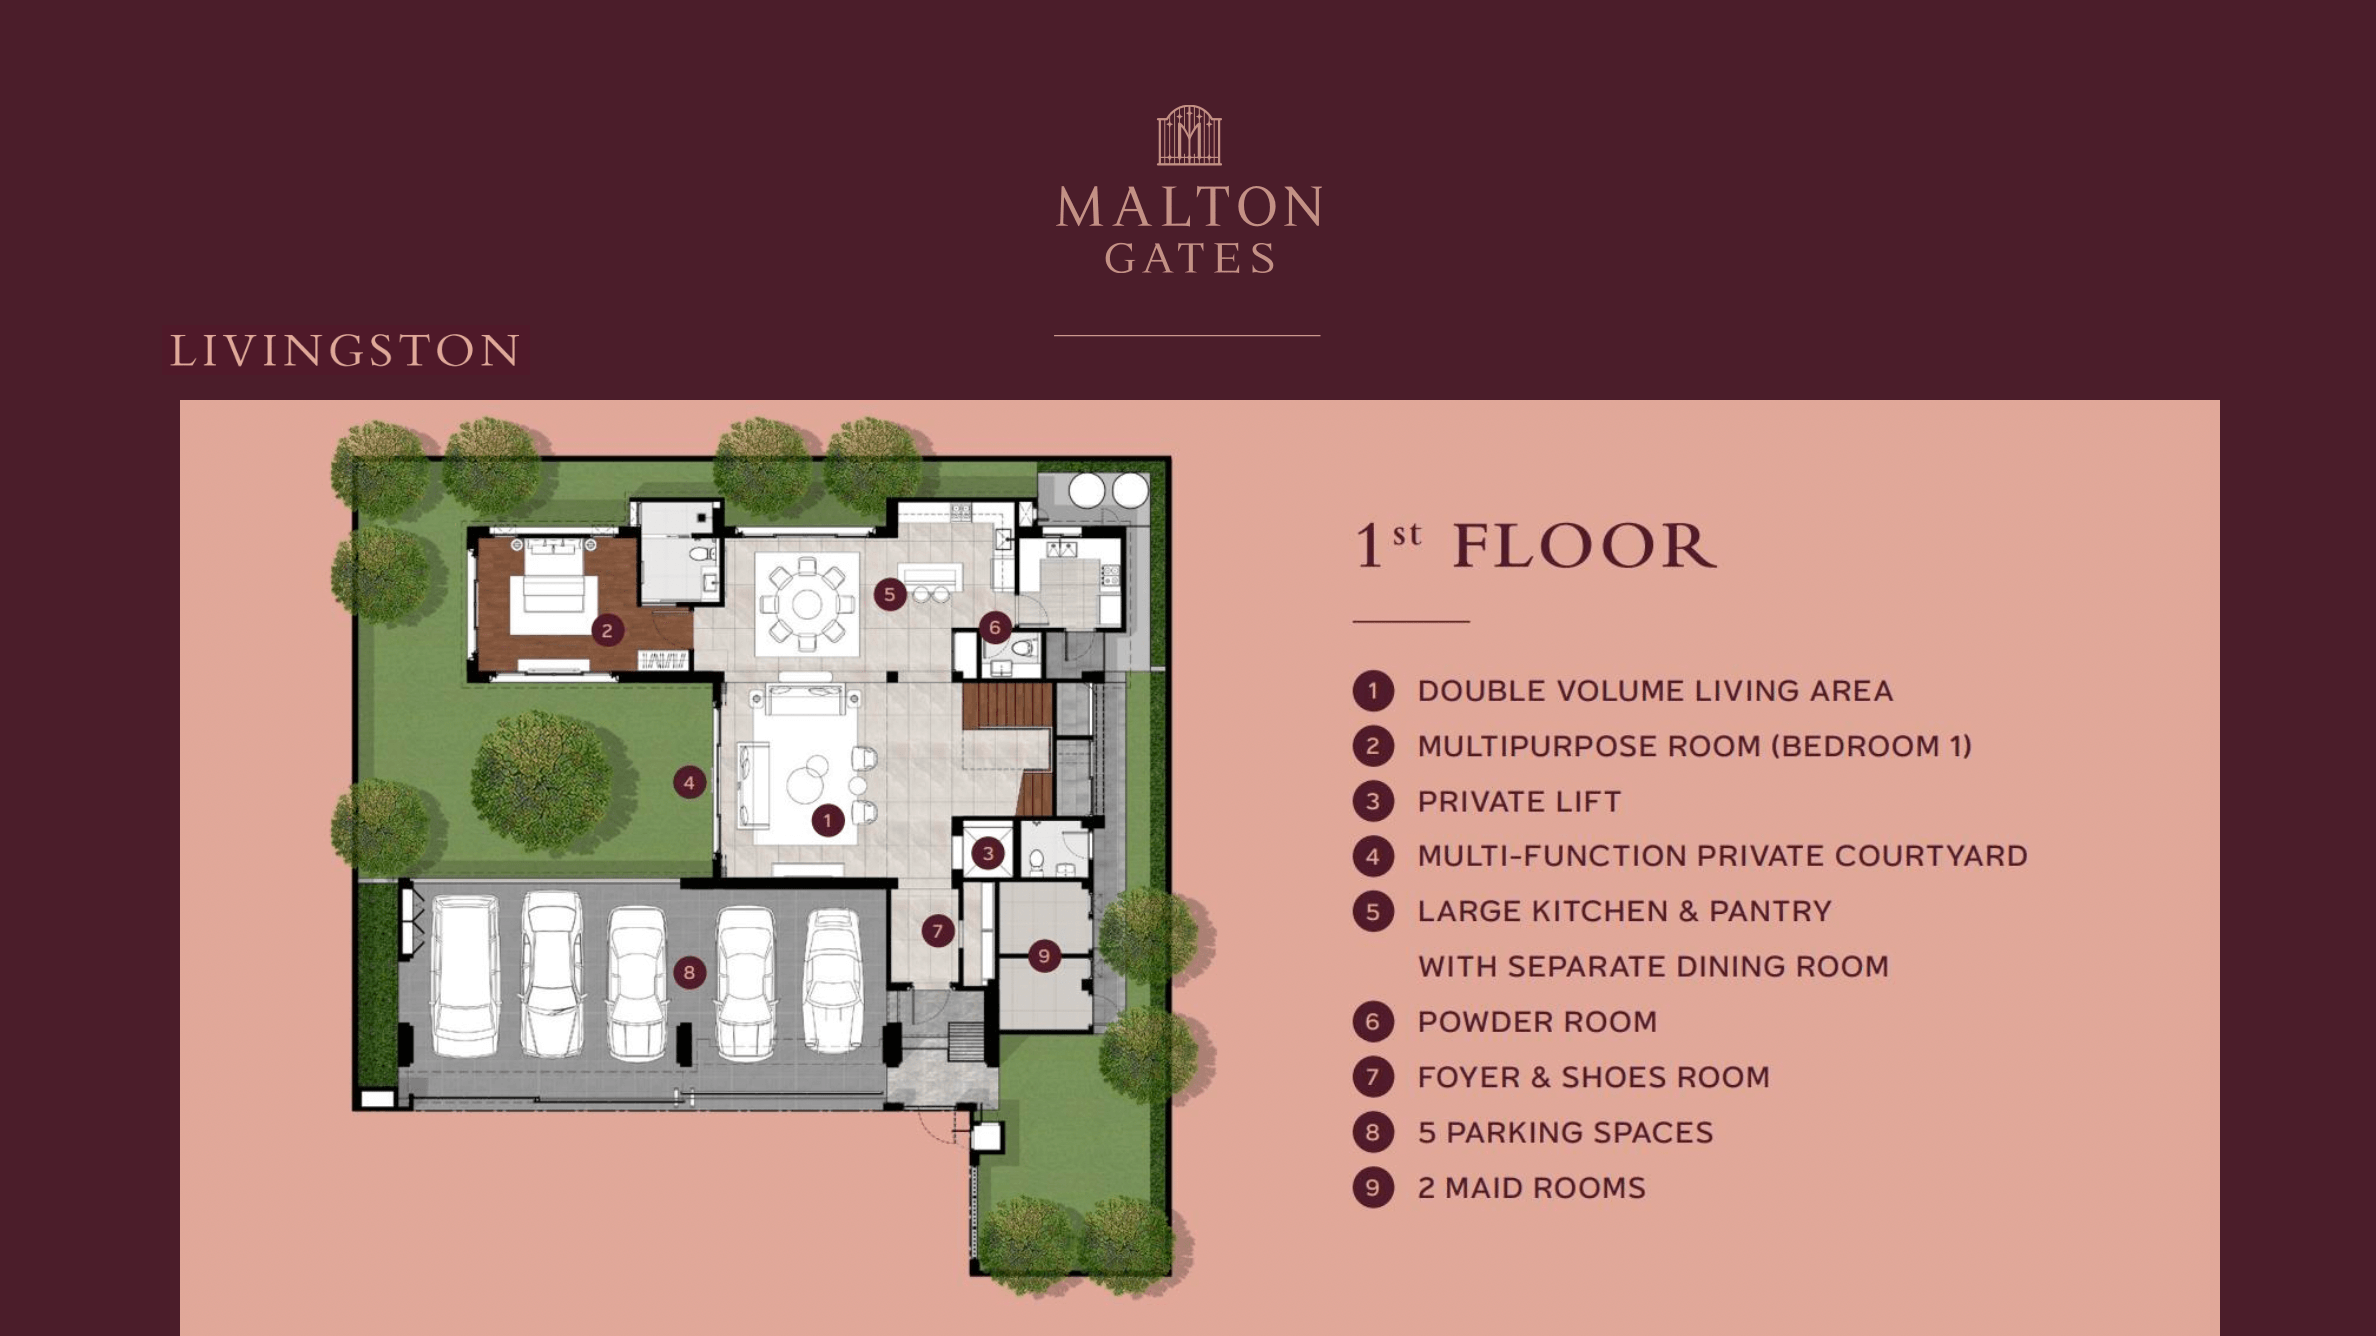 Malton Gates Livington Floor Plan 1